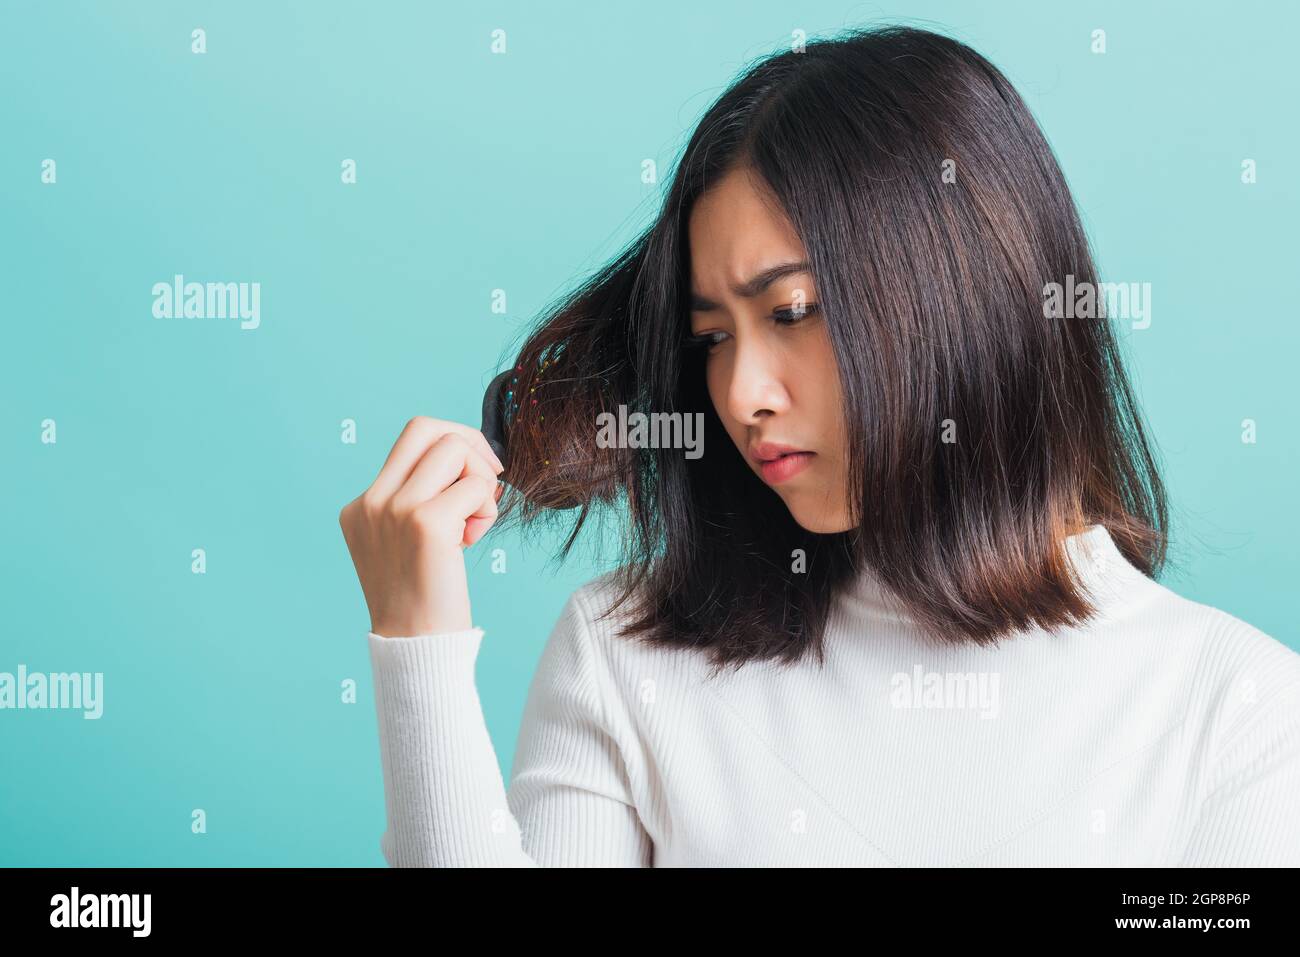 Junge schöne asiatische Frau aufgeregt mit einem Kamm und Problem Haar, Porträt weiblich schockiert leiden an Haarausfall Problem, Studio erschossen auf einem BL isoliert Stockfoto